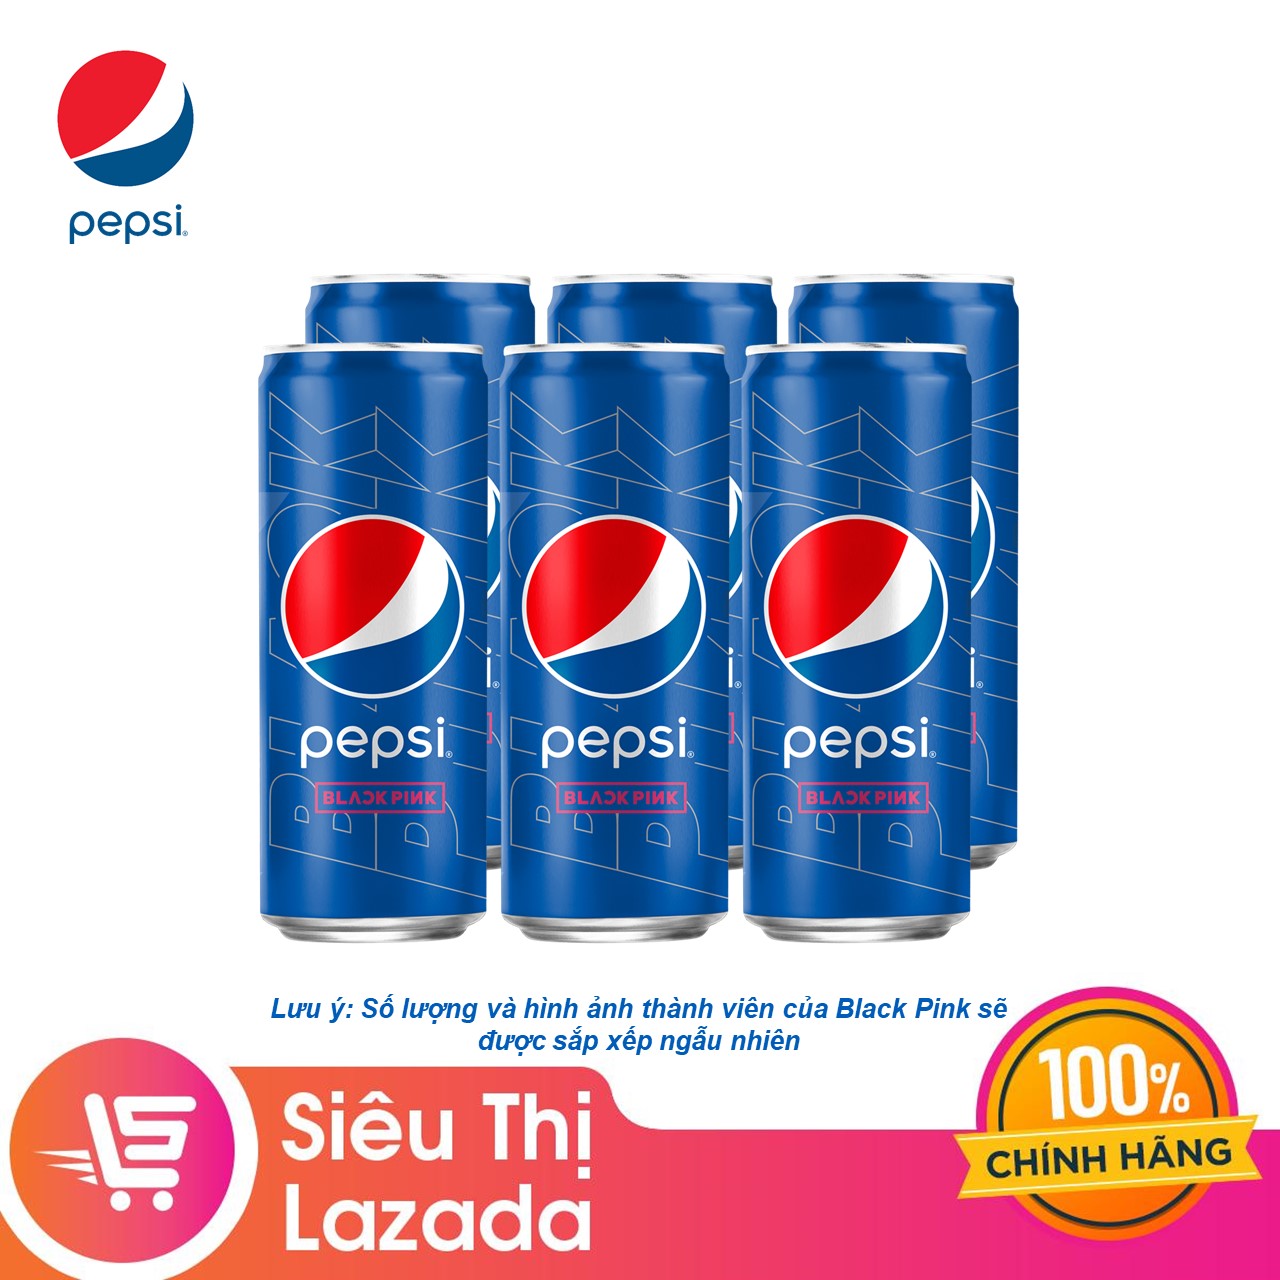 Pepsi  PEPSI x BLACKPINK  CÔNG CHÚA THÁI  NỮ THẦN ĐẤT  Facebook